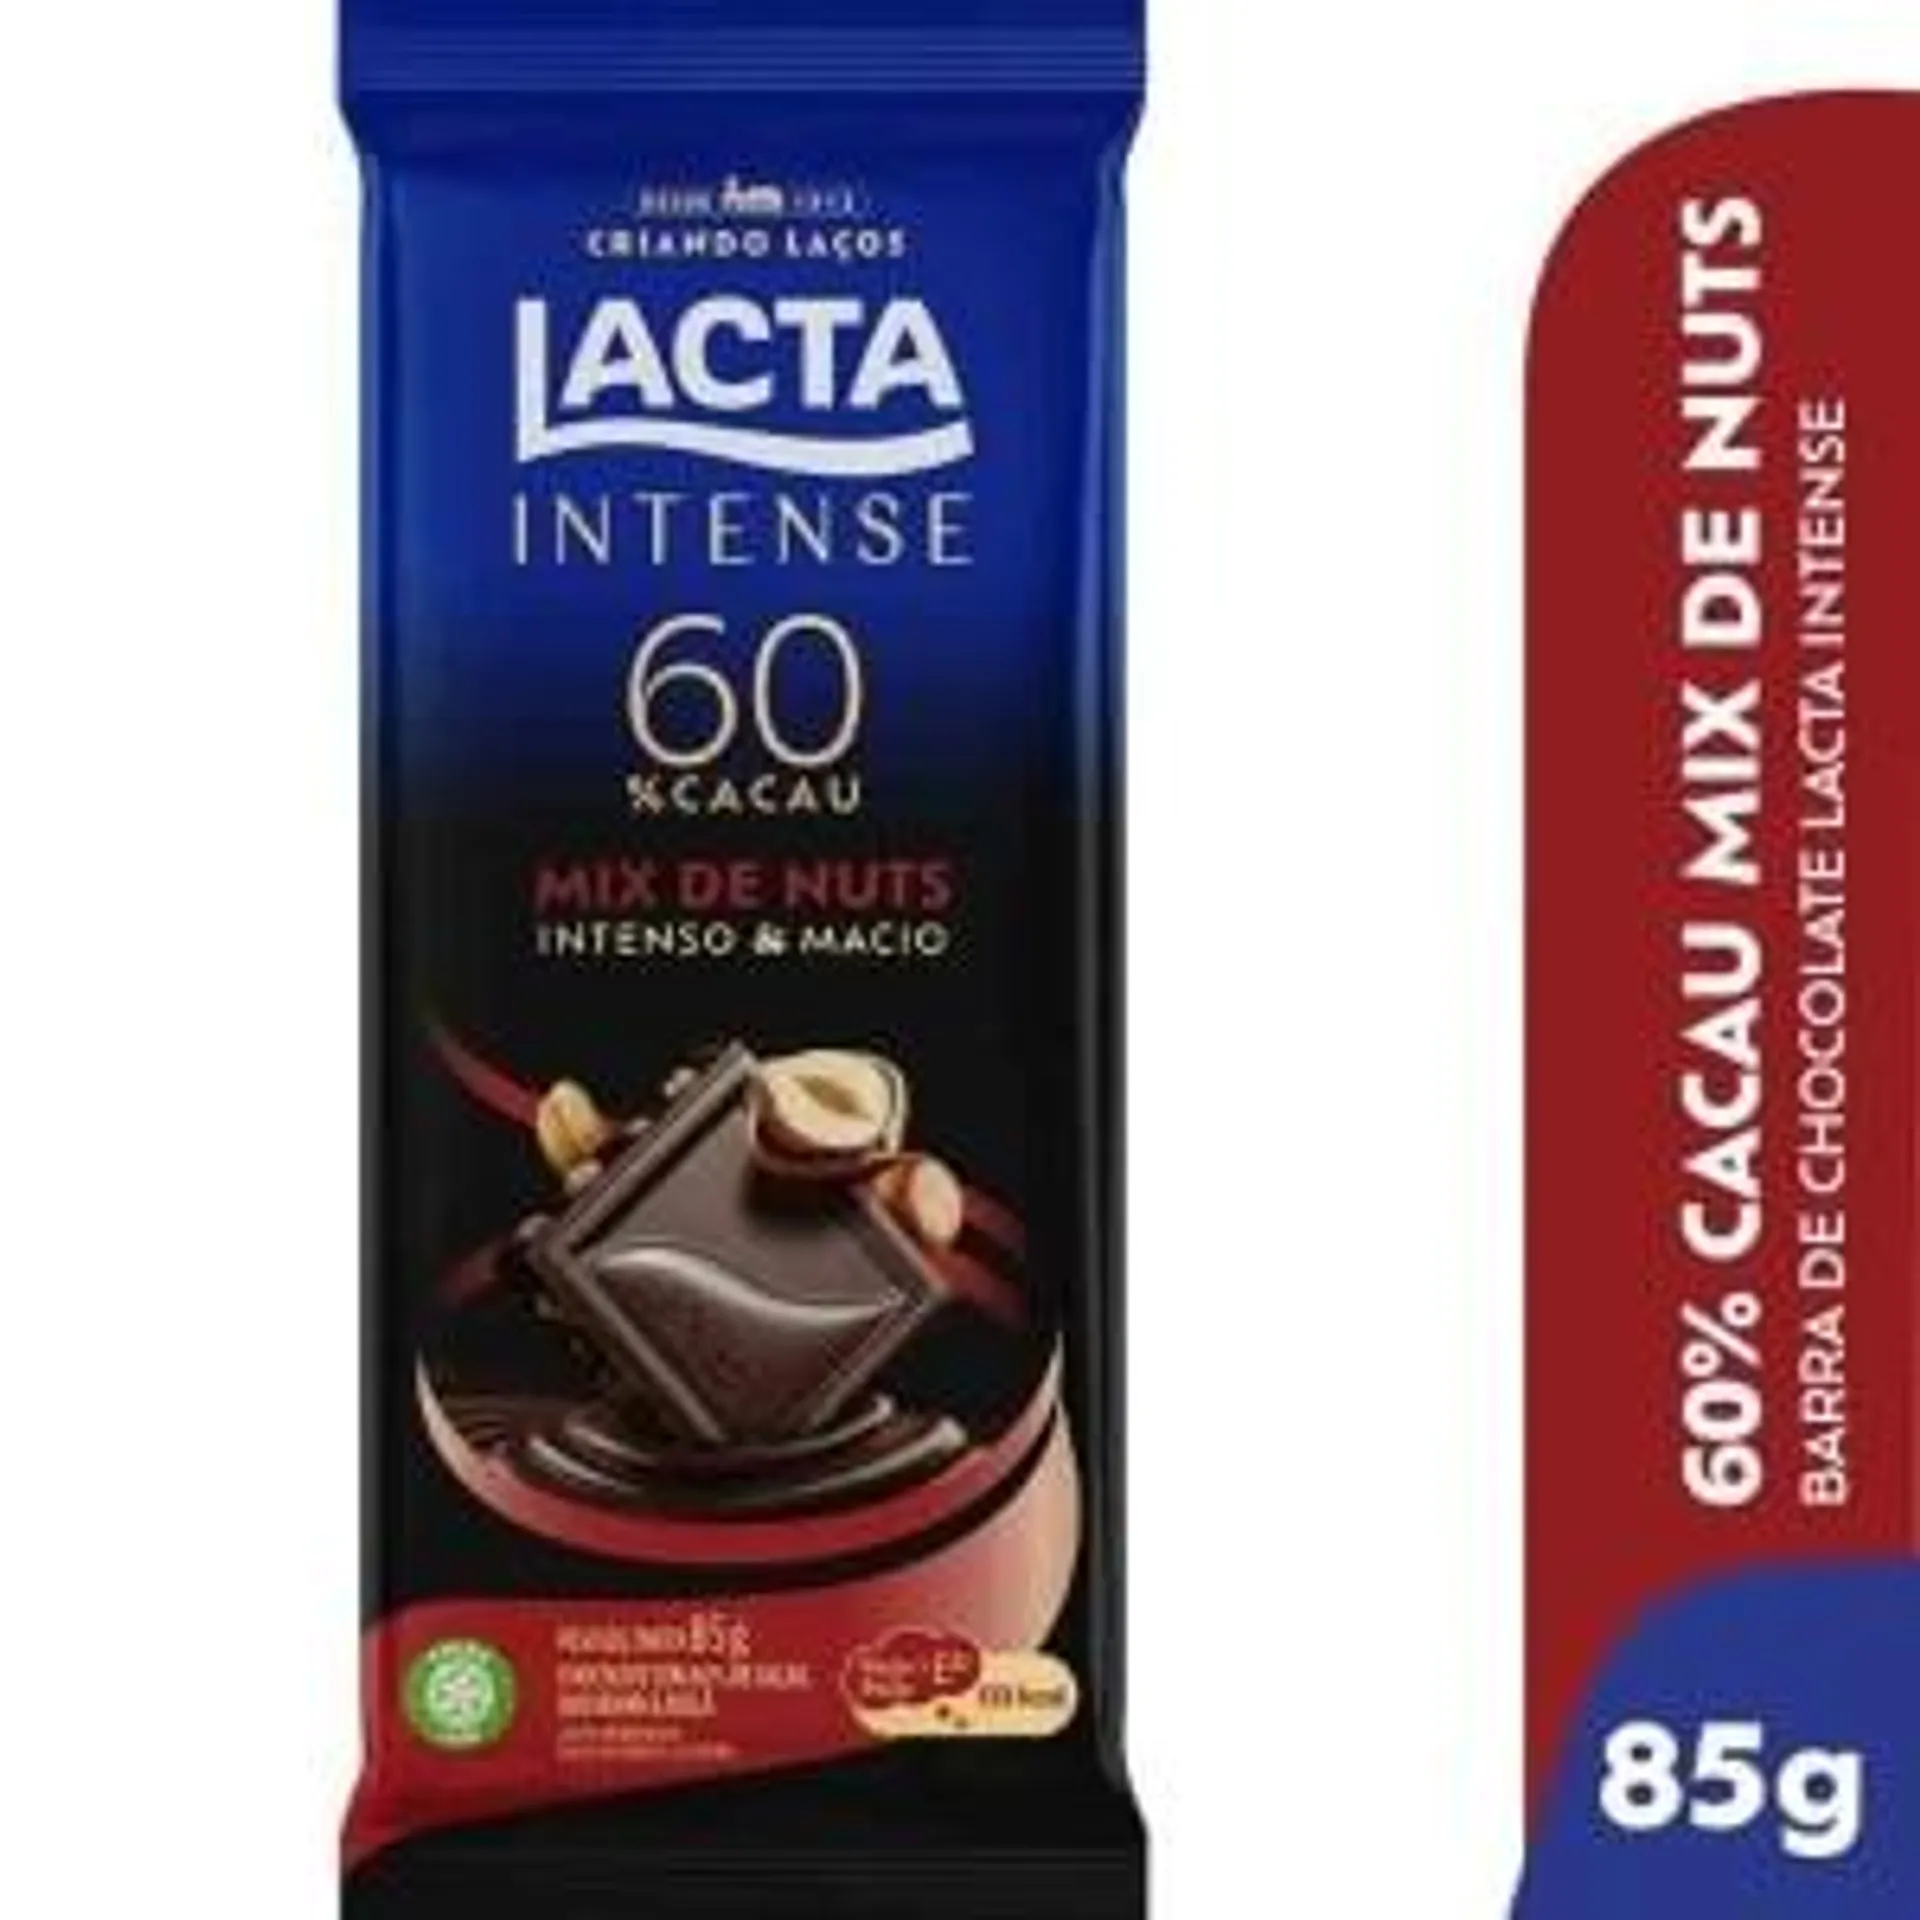 Chocolate Lacta Intense Mix Nuts 85g